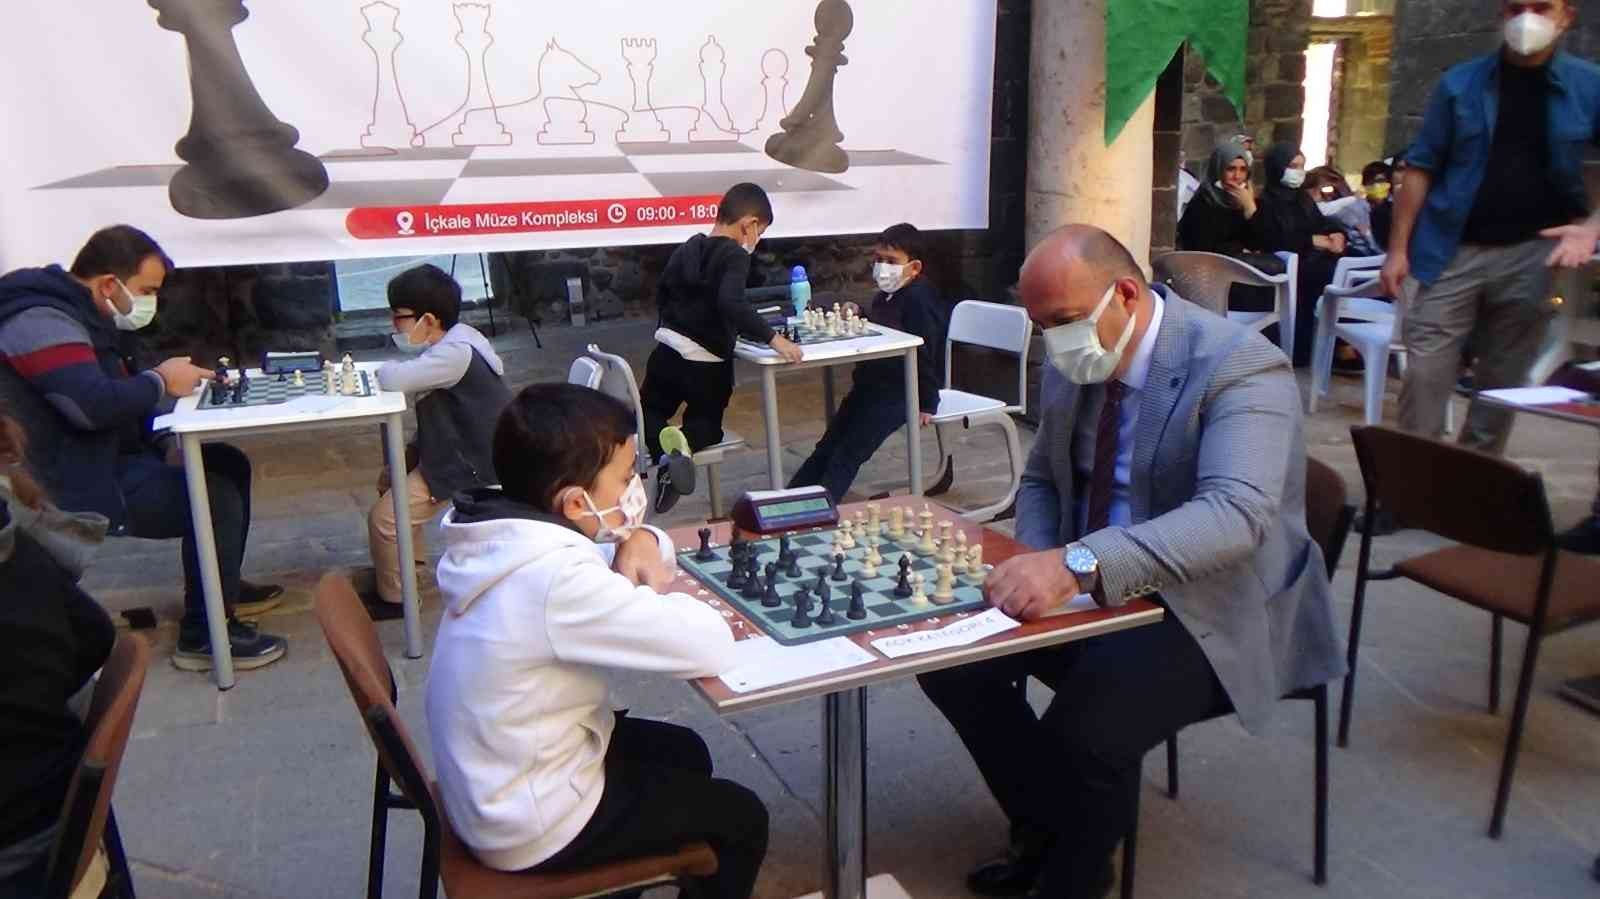 Sur Belediyesi geleneksel 1. satranç turnuvası başladı #diyarbakir